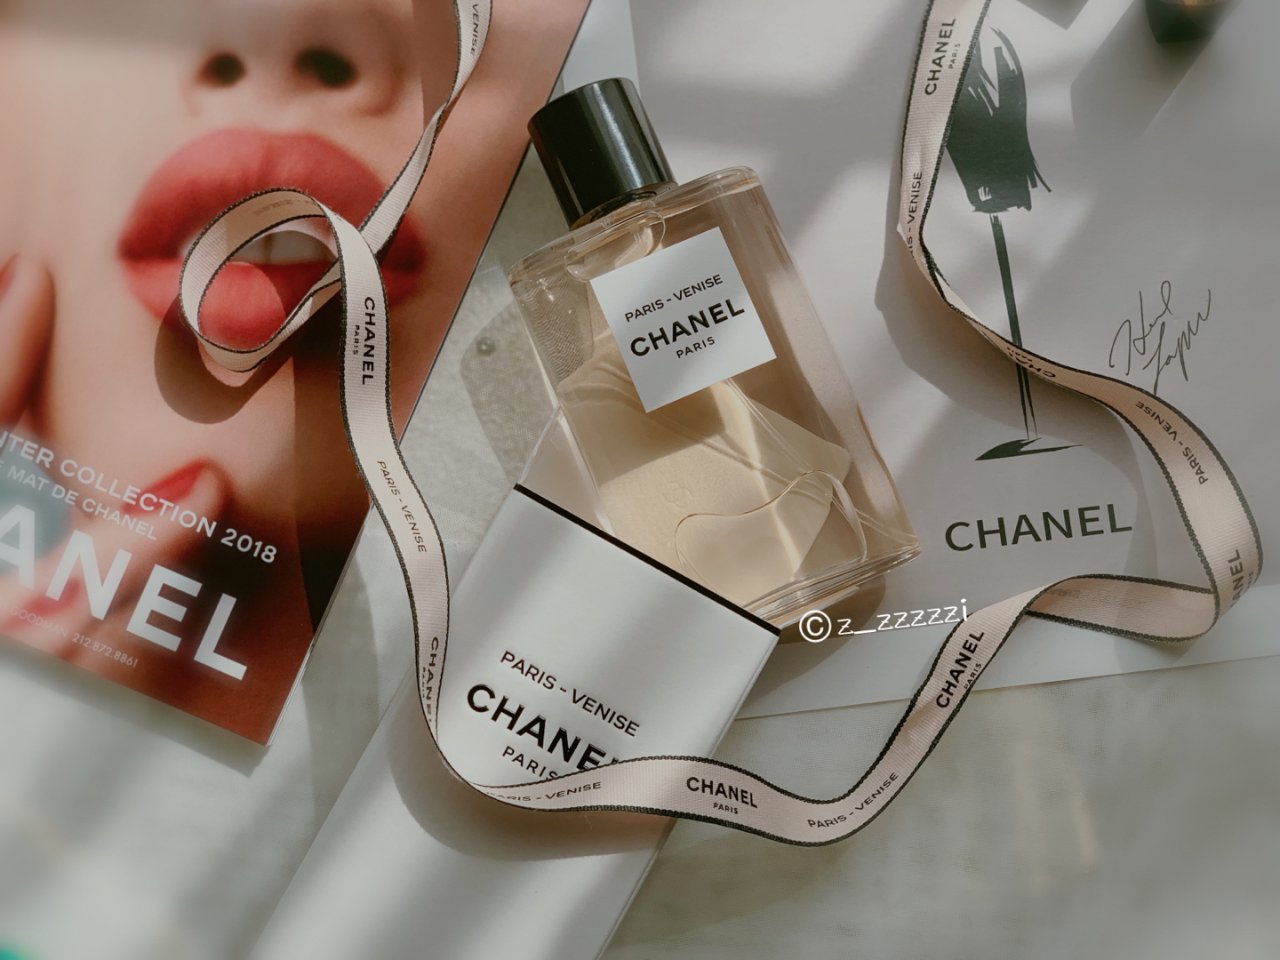 Chanel 香奈儿,Chanel 香奈儿,VENISE,Les Eaux Paris